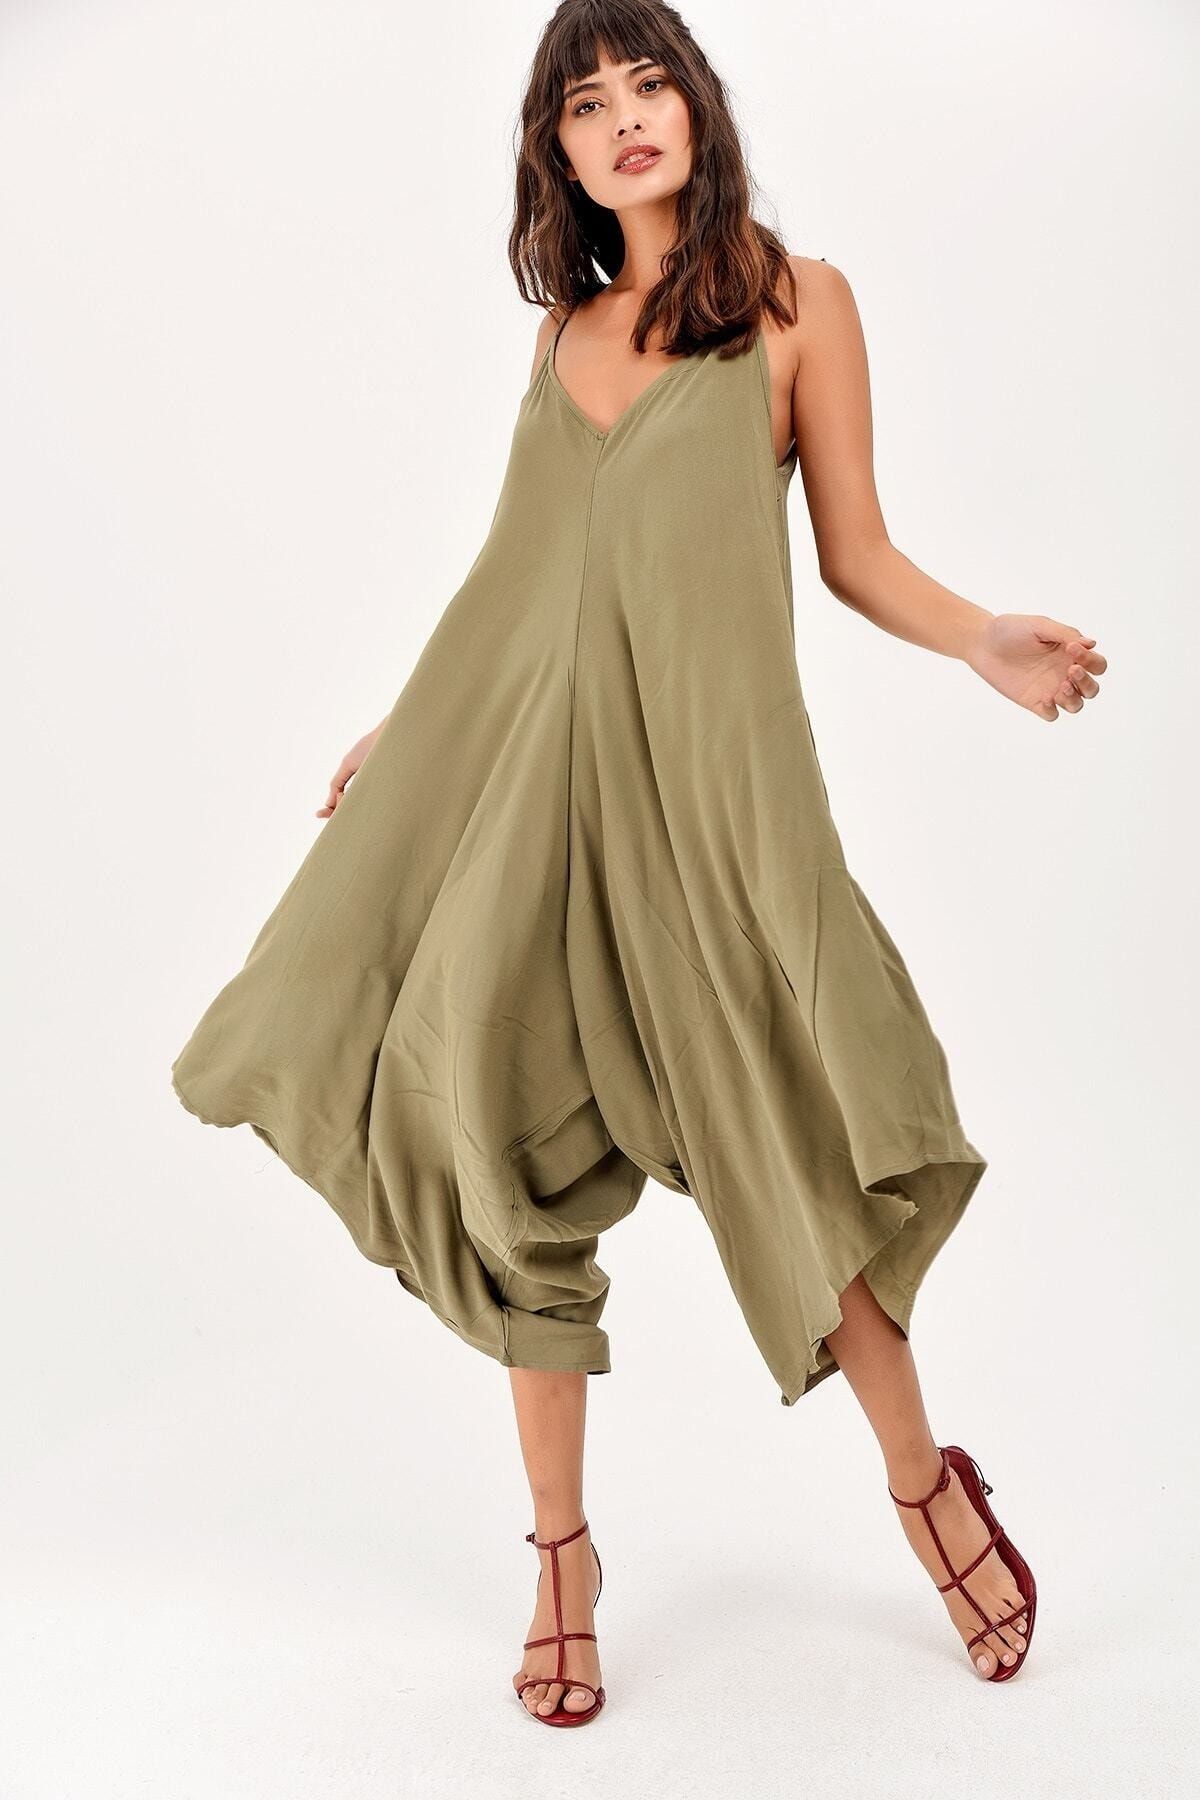 New Laviva Pasaklı Giyim Kadın Viskon Haki Yeşil Askılı Cepli Salaş Asimetrik Pantolon Etek Tulum 220h5002